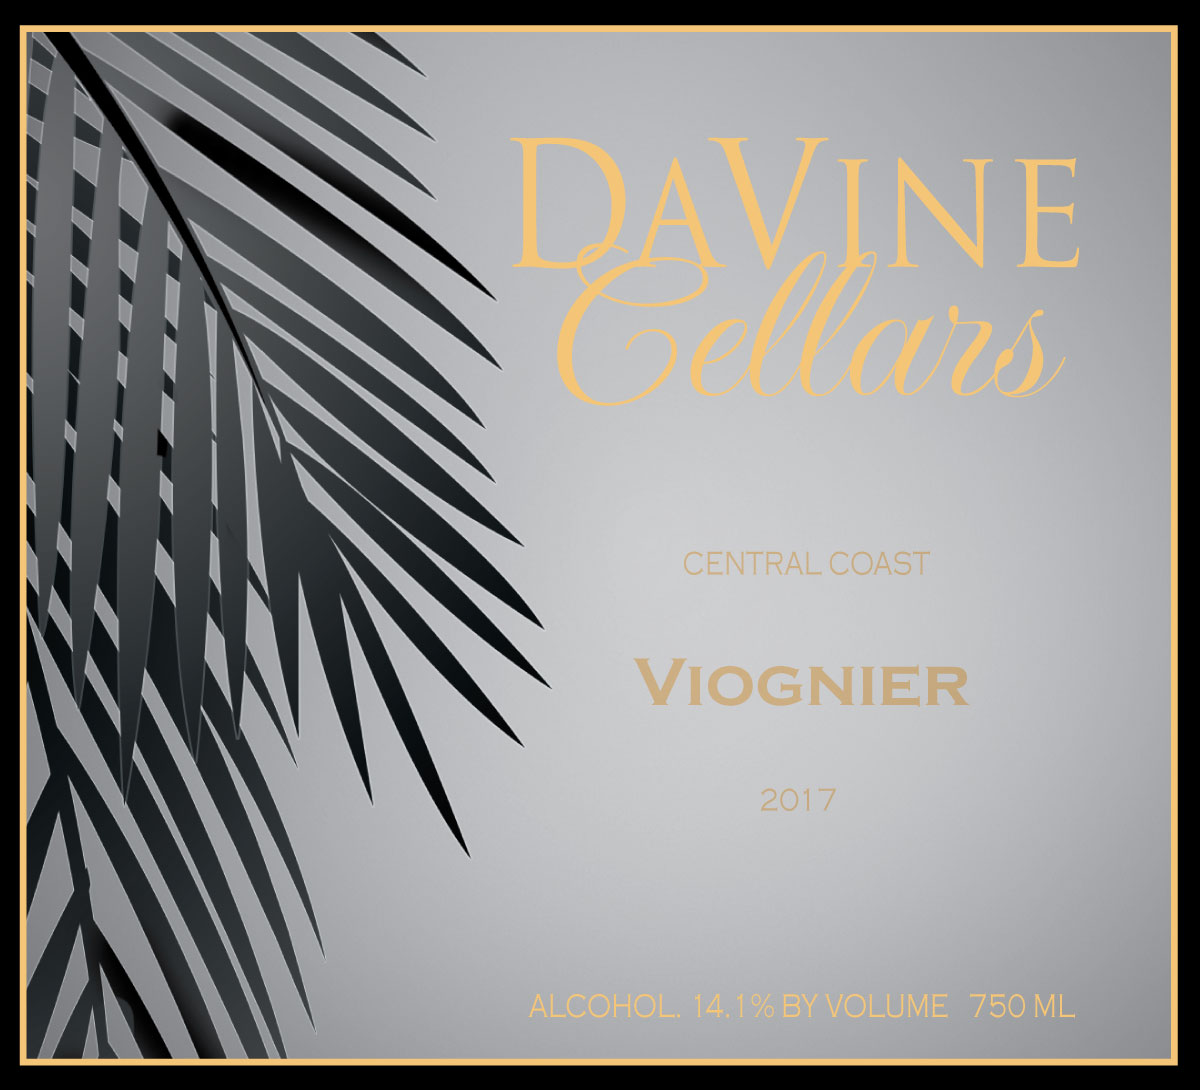 Product Image for 2017 Central Coast Viognier "C'est La Vie"